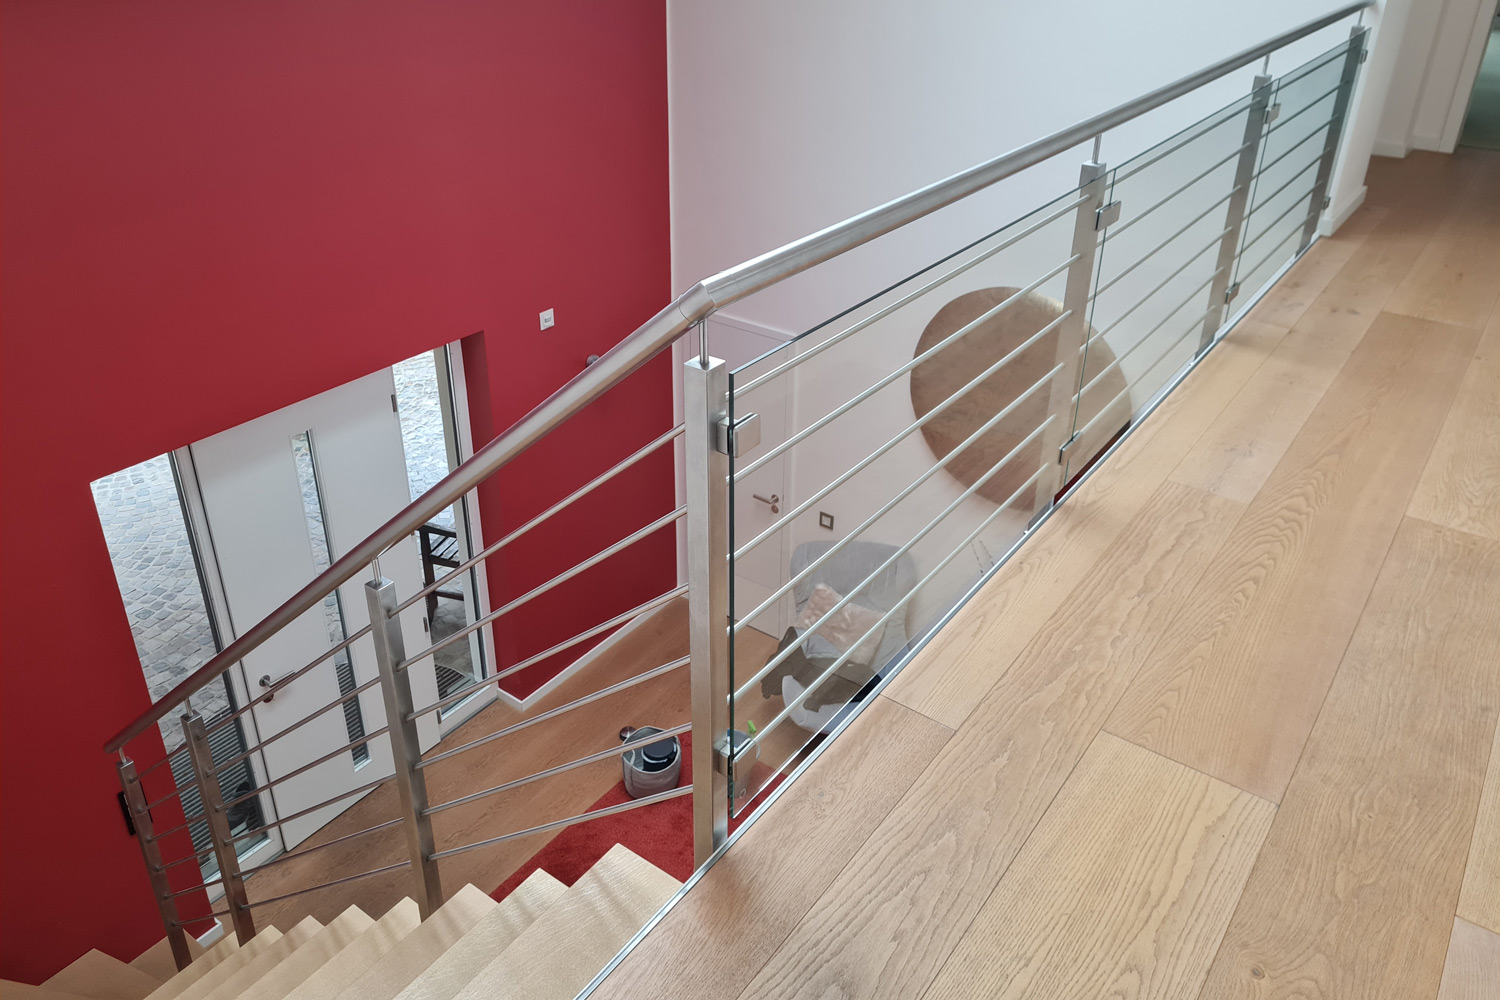 In Mülheim an einer Villa ist eine freitragende Holz Stufen Treppe mit Stahl Kern von der Edelstahlschlosserei Naappenfeld montiert worden